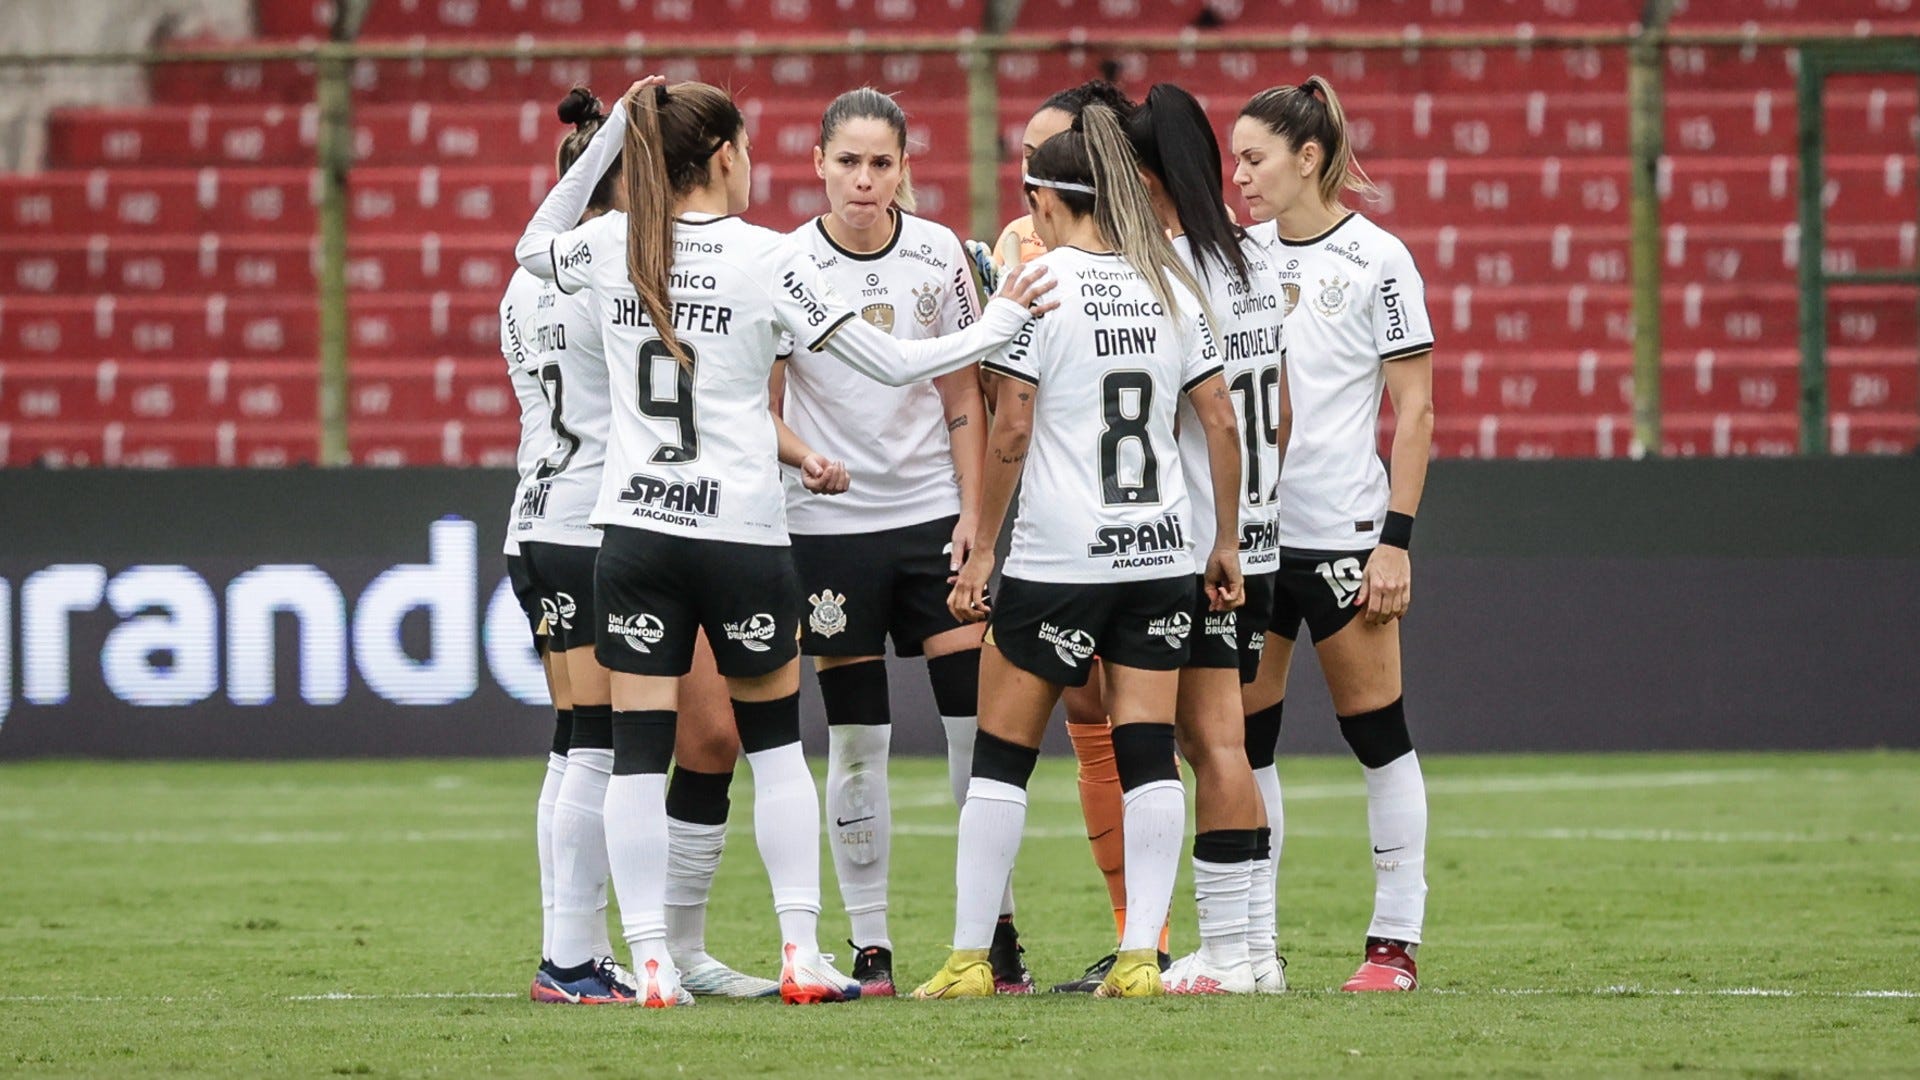 Quanto que ficou o jogo do Corinthians Feminino hoje?